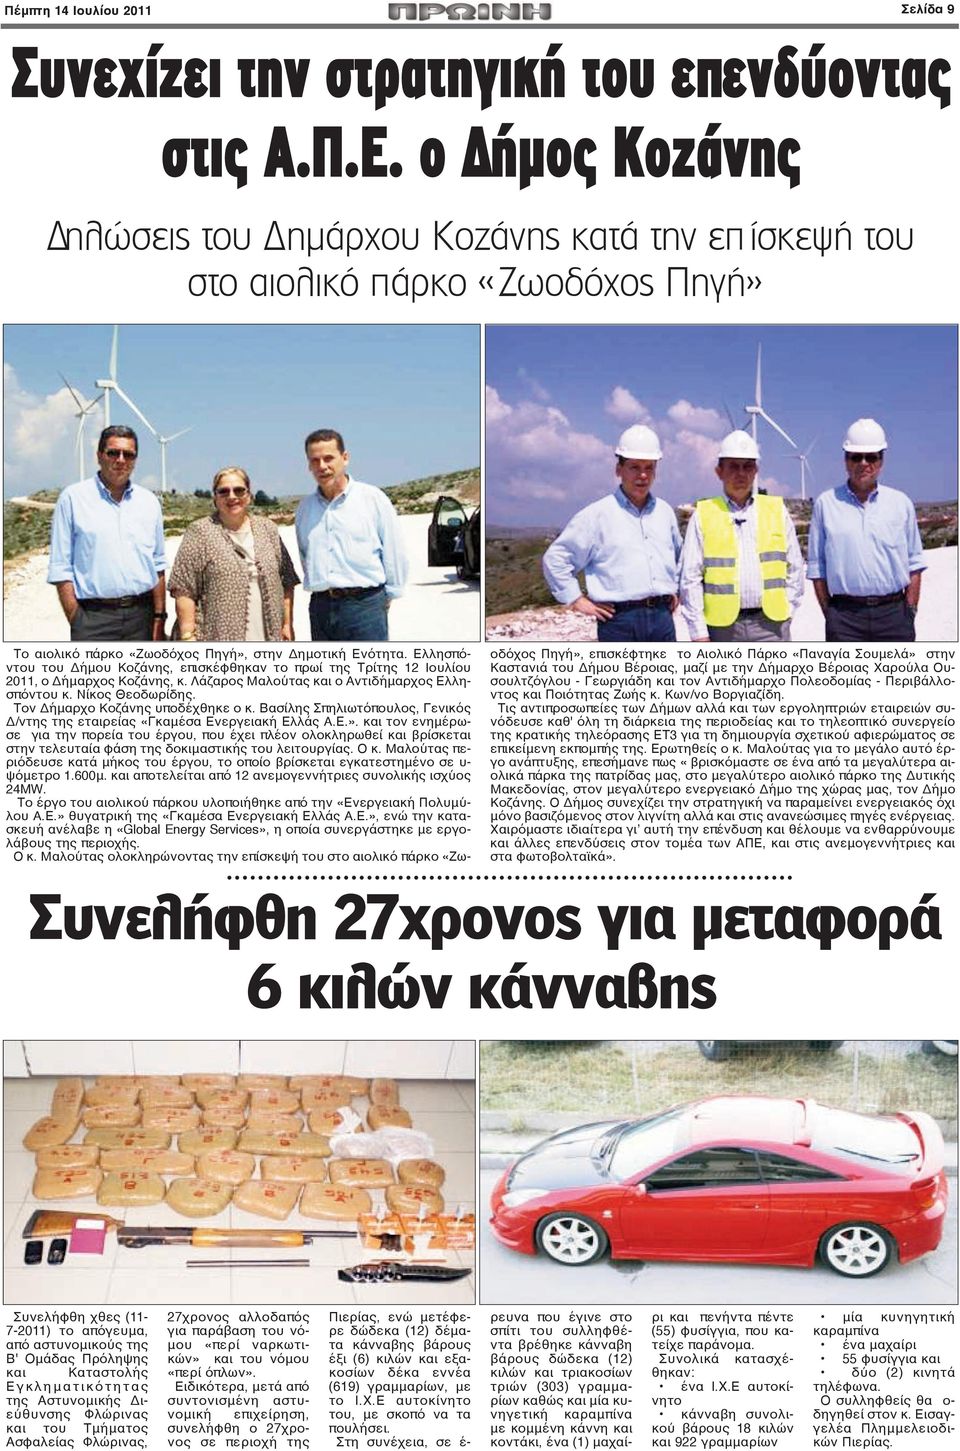 Ελλησπόντου του Δήμου Κοζάνης, επισκέφθηκαν το πρωί της Τρίτης 12 Ιουλίου 2011, ο Δήμαρχος Κοζάνης, κ. Λάζαρος Μαλούτας και ο Αντιδήμαρχος Ελλησπόντου κ. Νίκος Θεοδωρίδης.